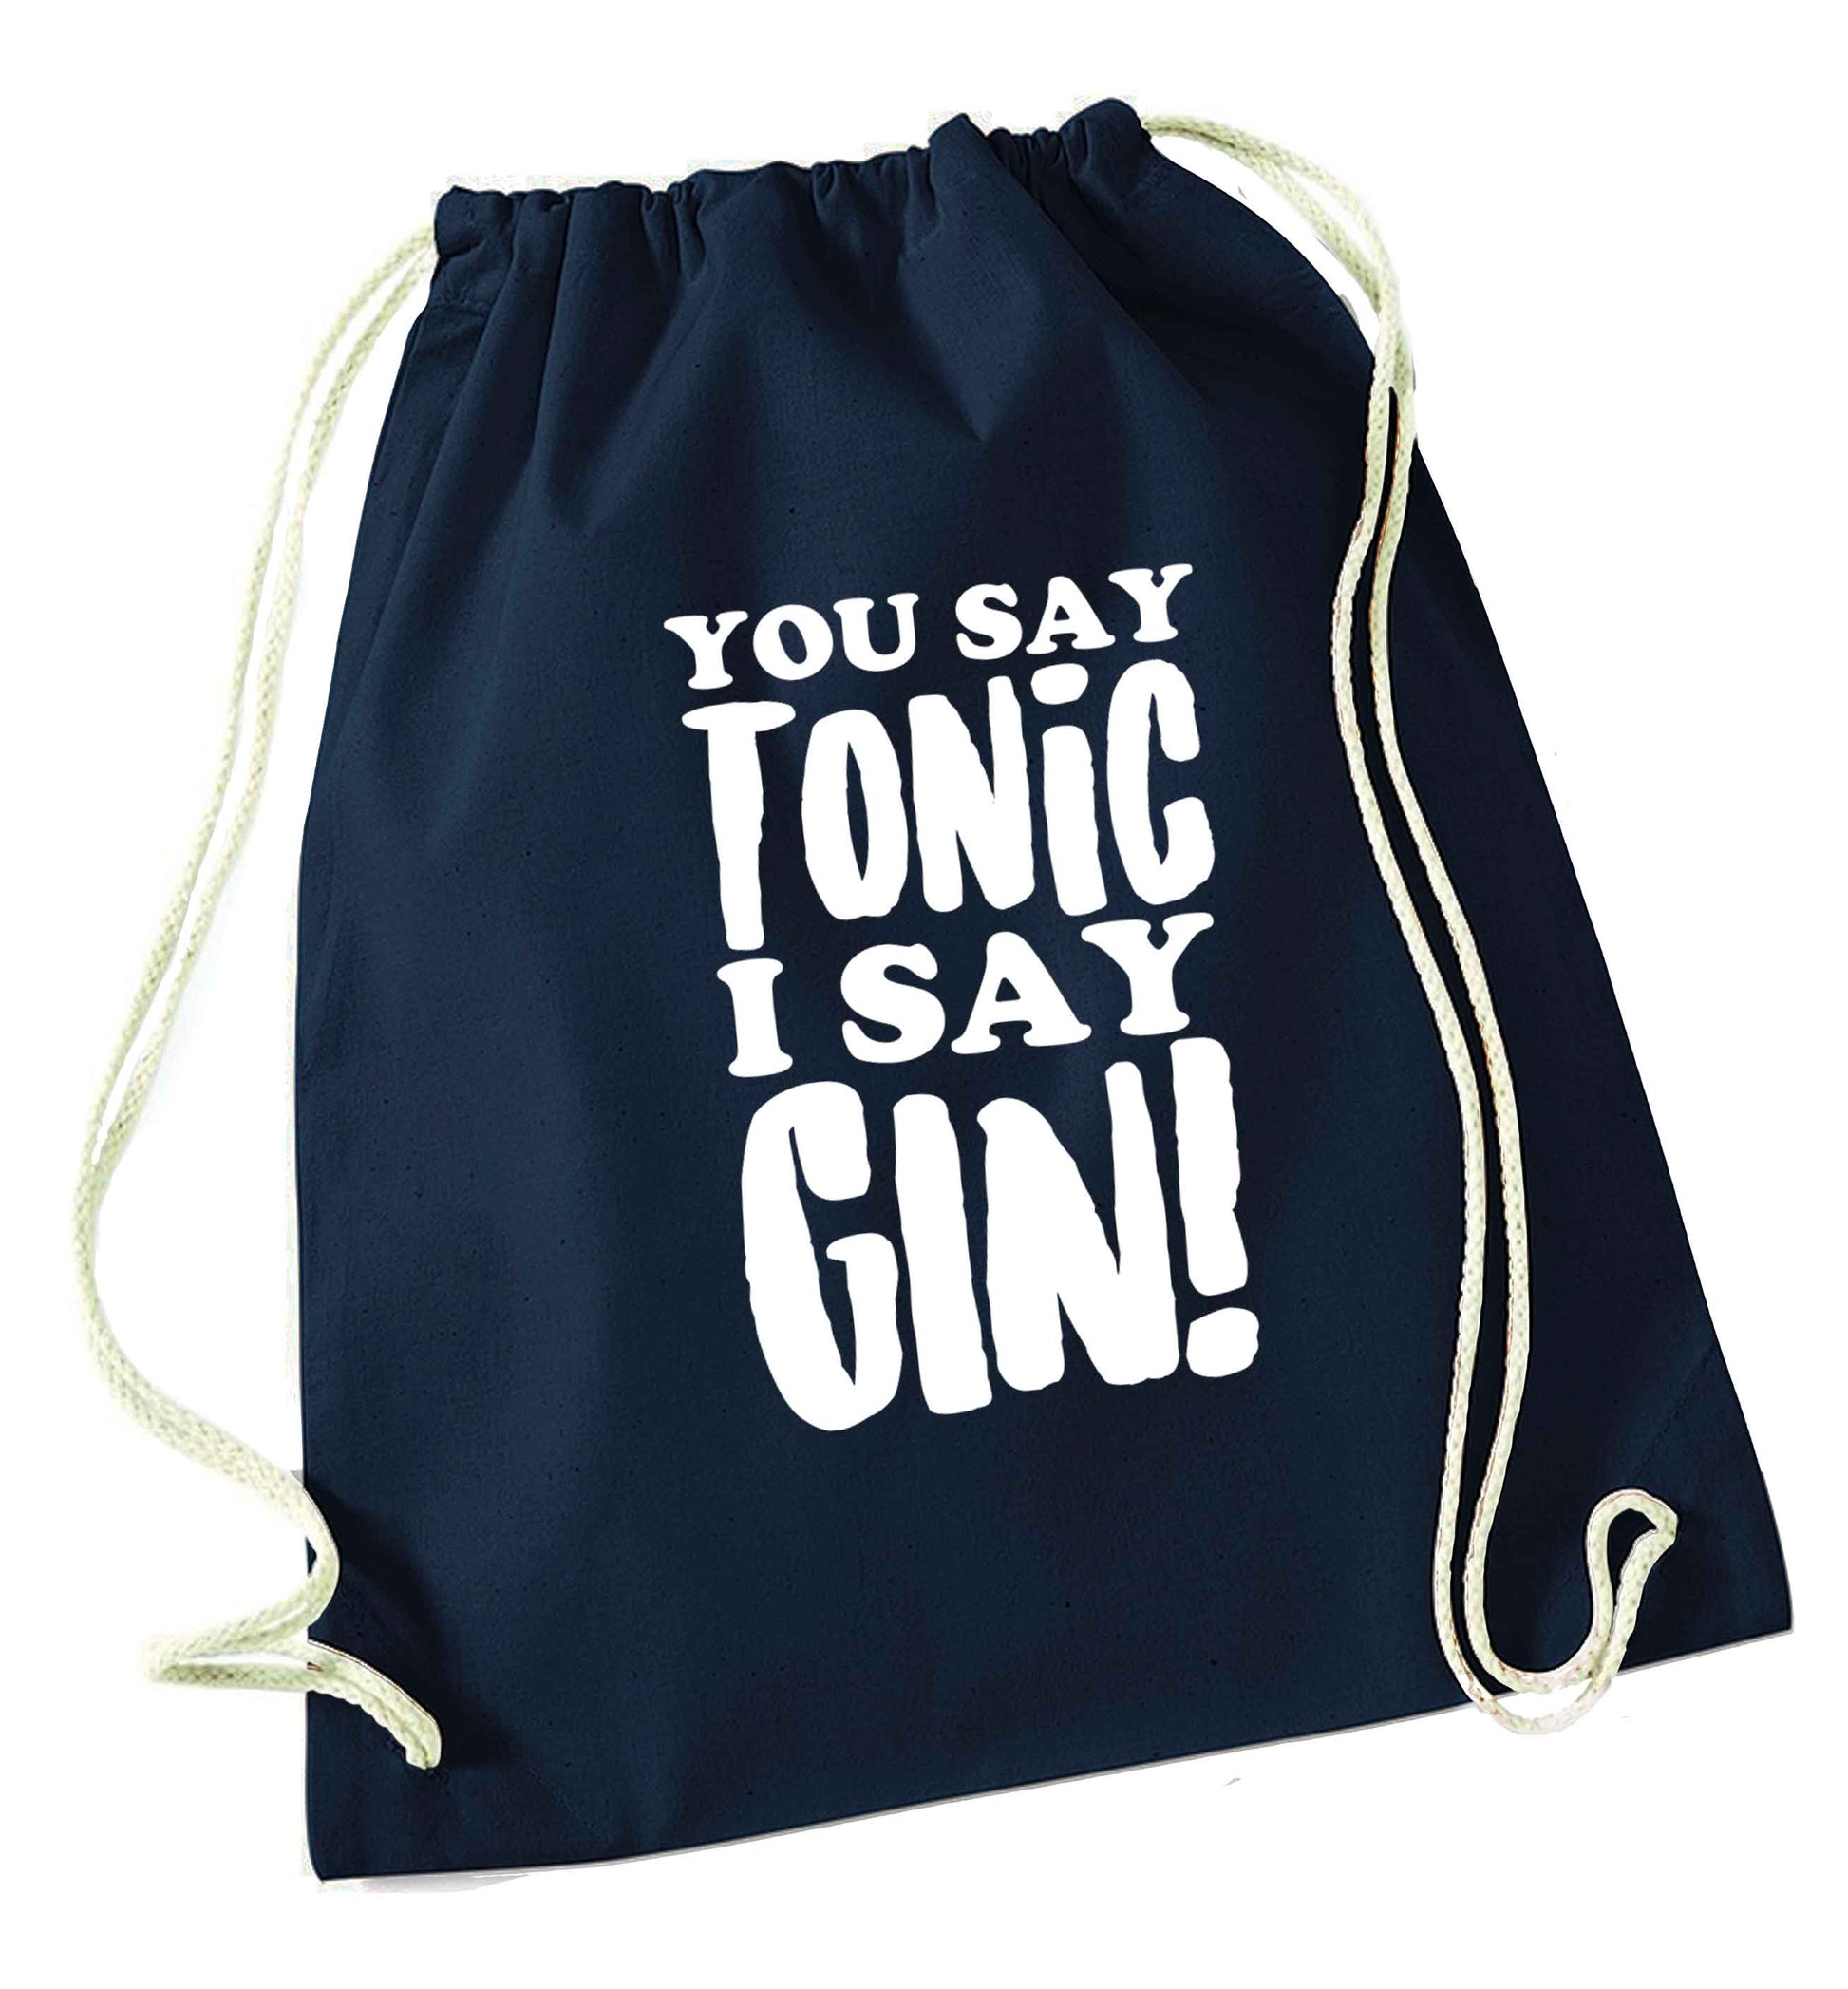 You say tonic I say gin navy drawstring bag